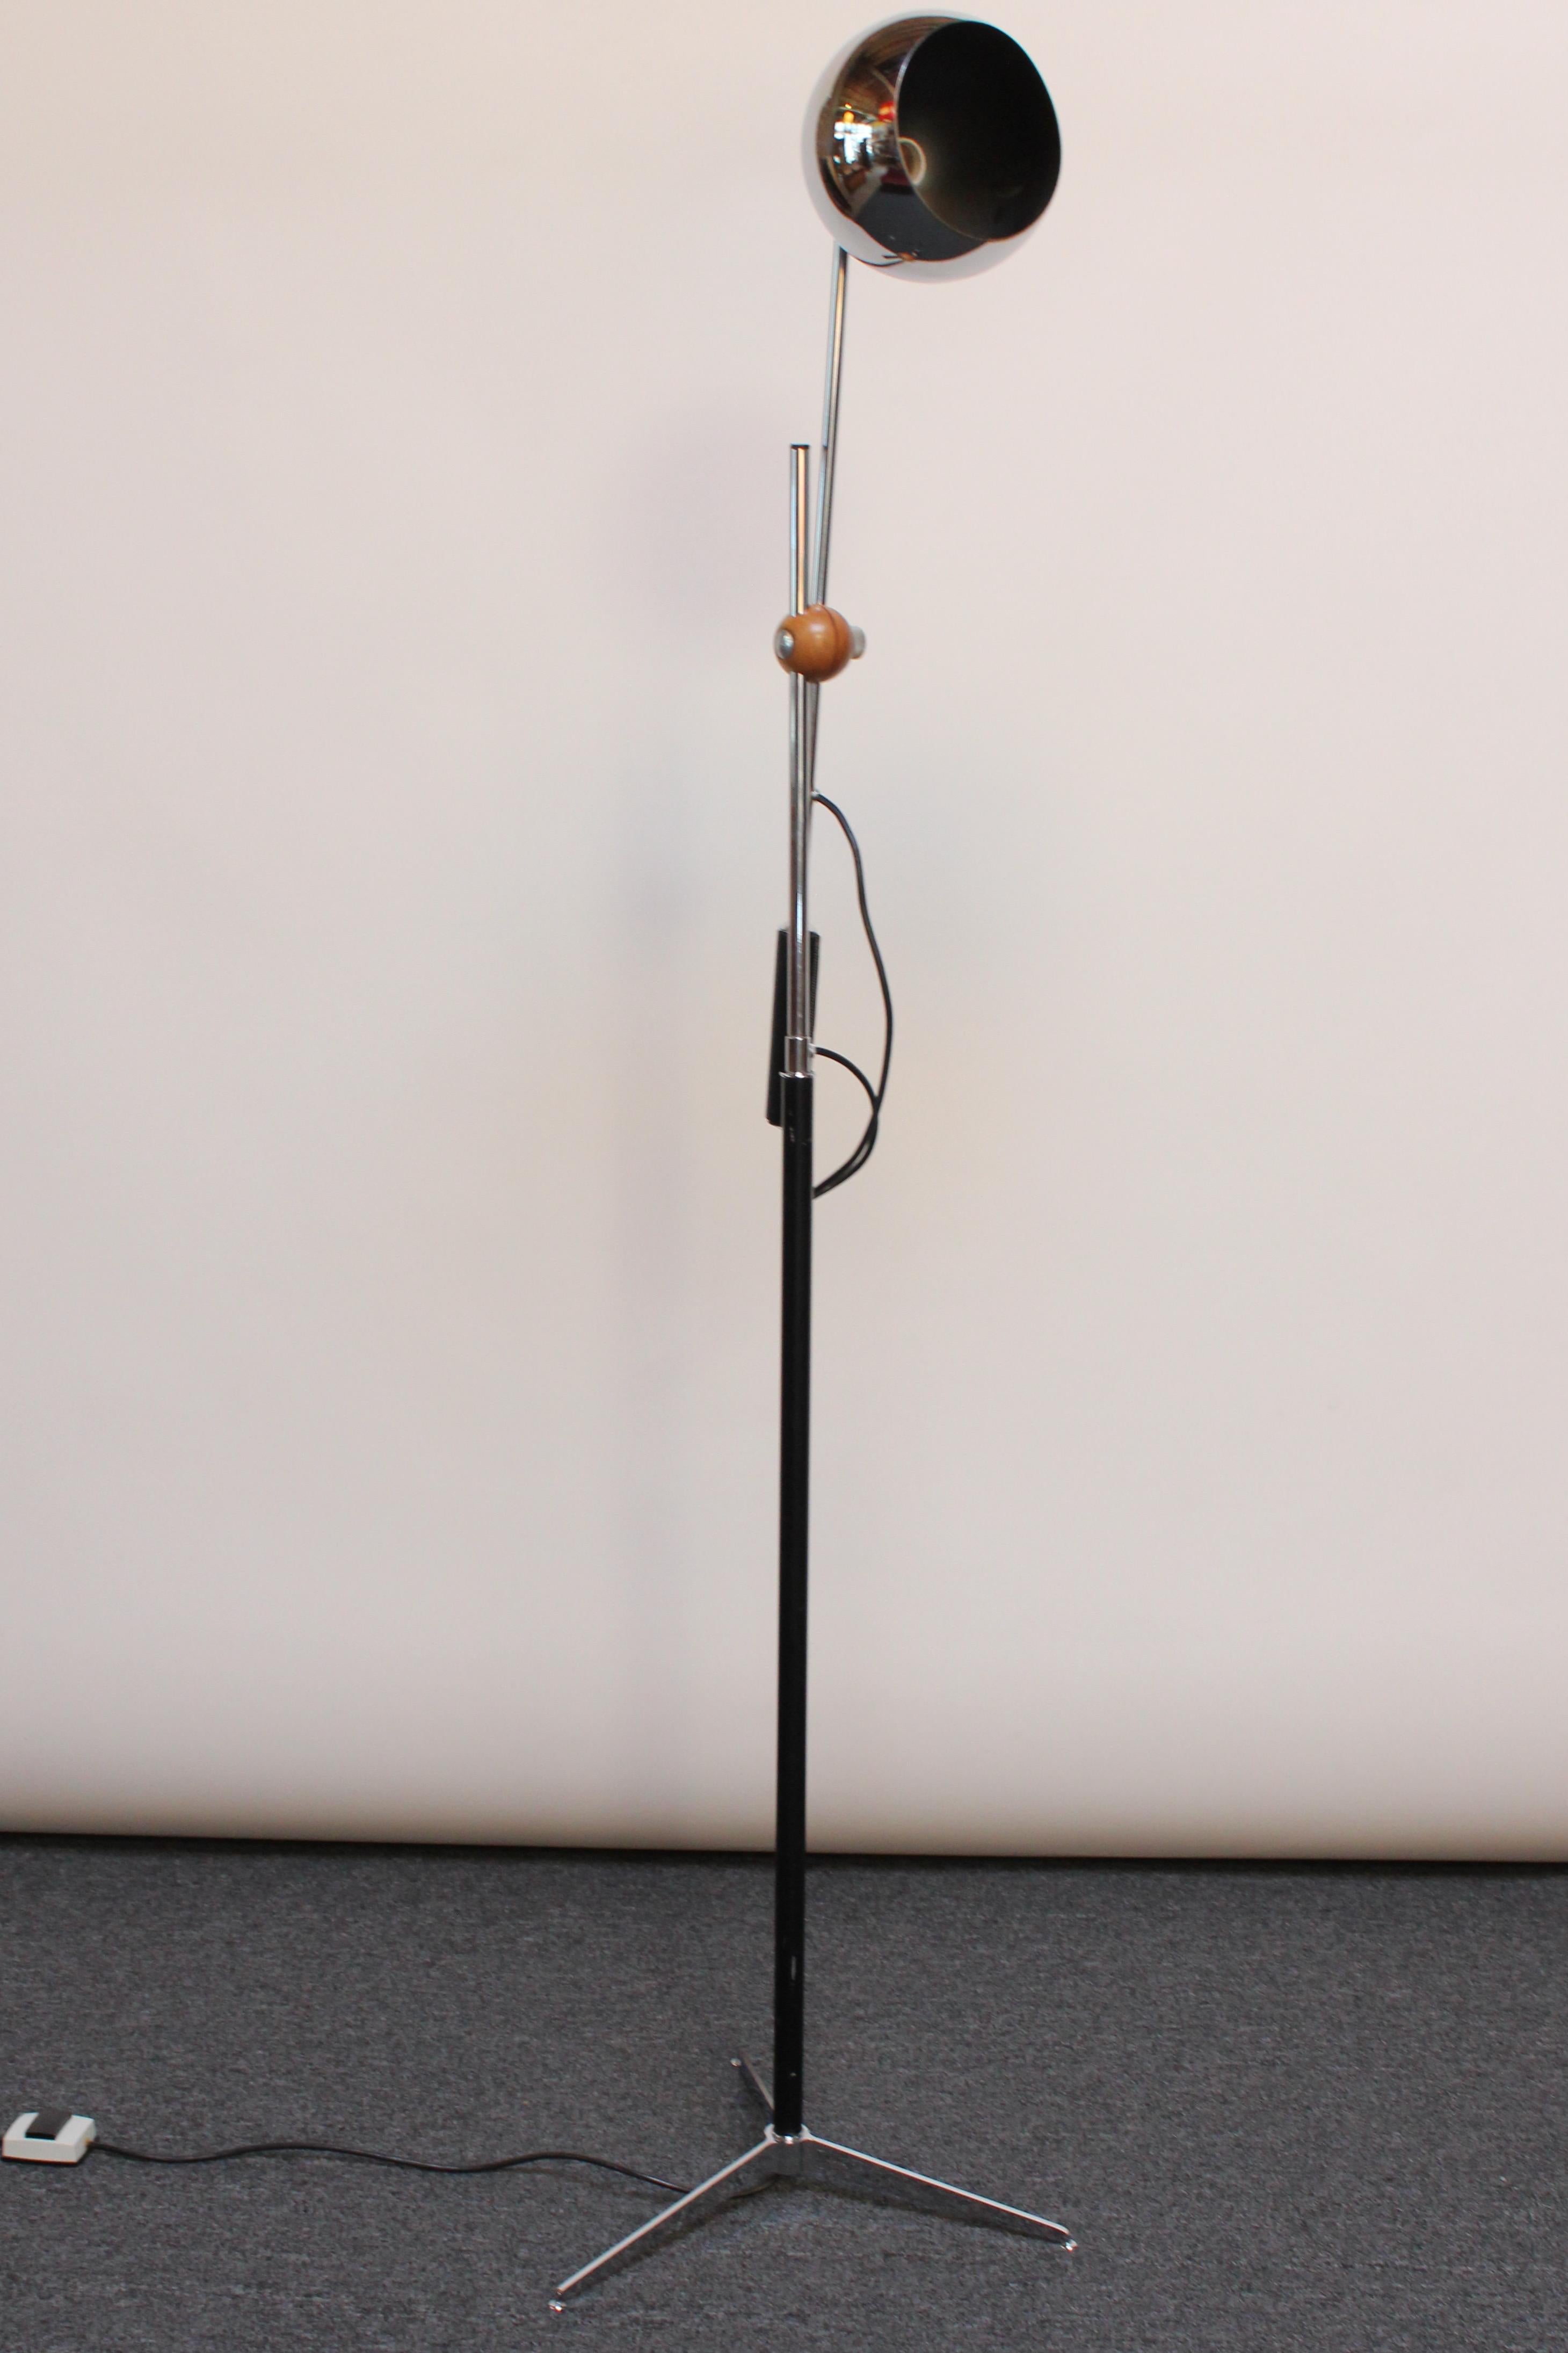 Lampadaire chromé fabriqué dans les années 1960 par Arteluce. 
Composé d'un bras unique contrebalancé avec un abat-jour réglable et une poignée enveloppée de cuir, le tout supporté par un arbre émaillé noir et une base tripode. 
Le fermoir en